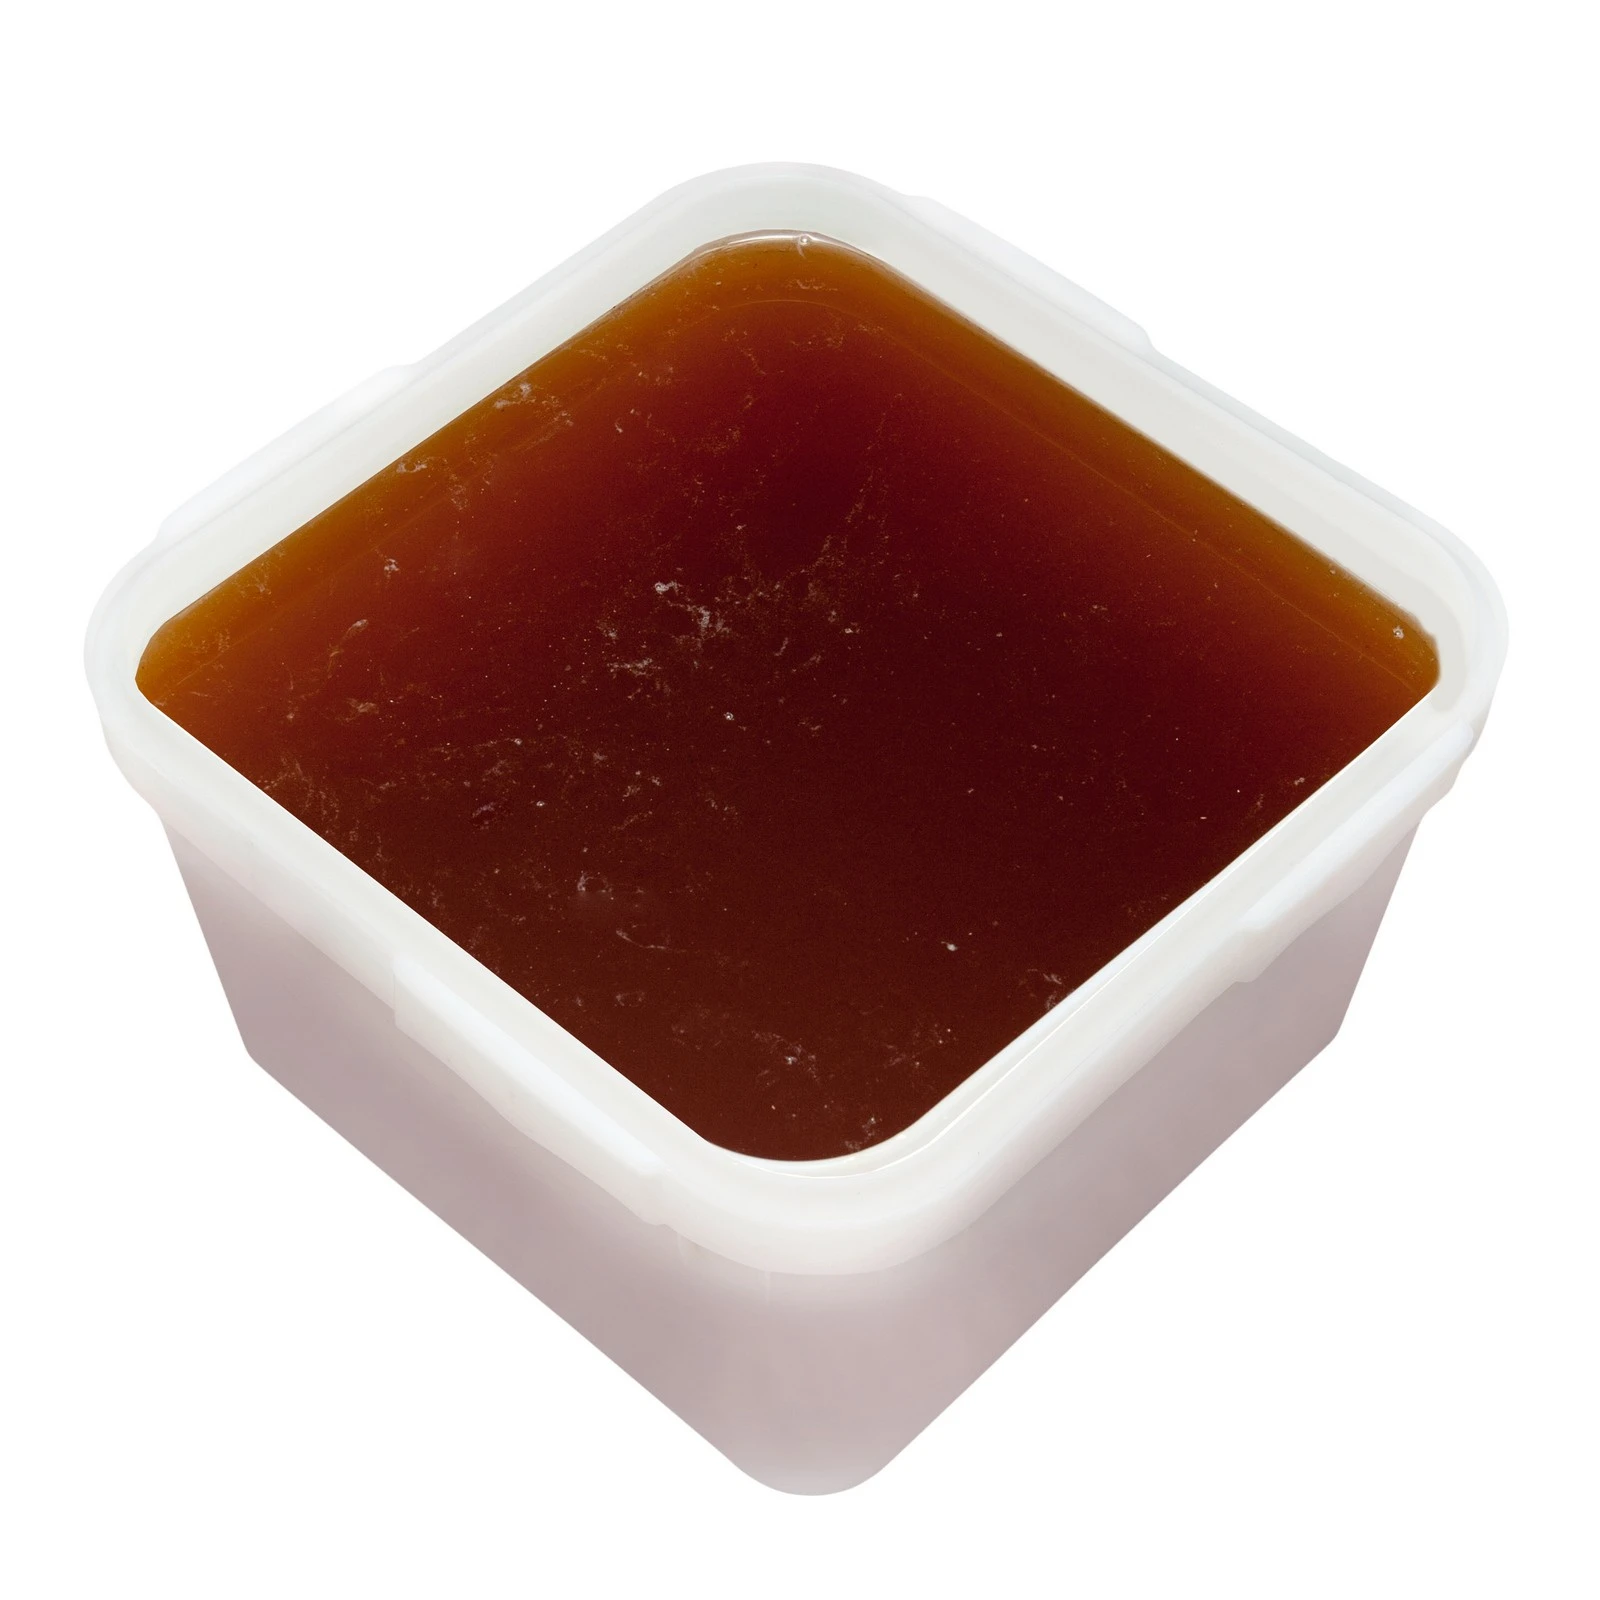 Каштановый мёд (жидкий)